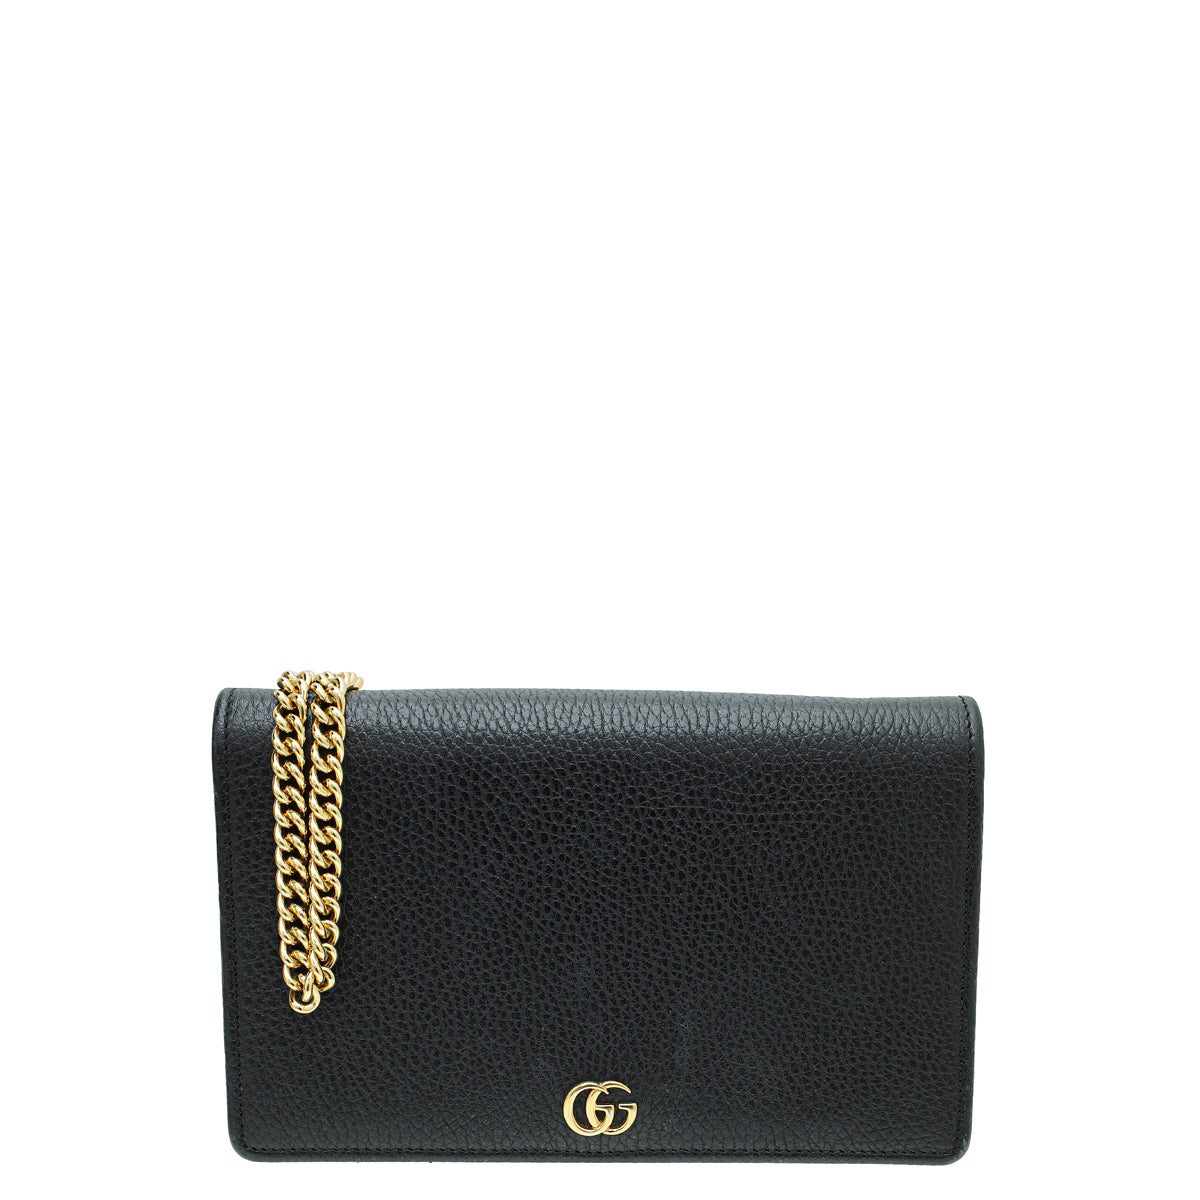 Gucci Black GG Marmont Mini Chain Bag